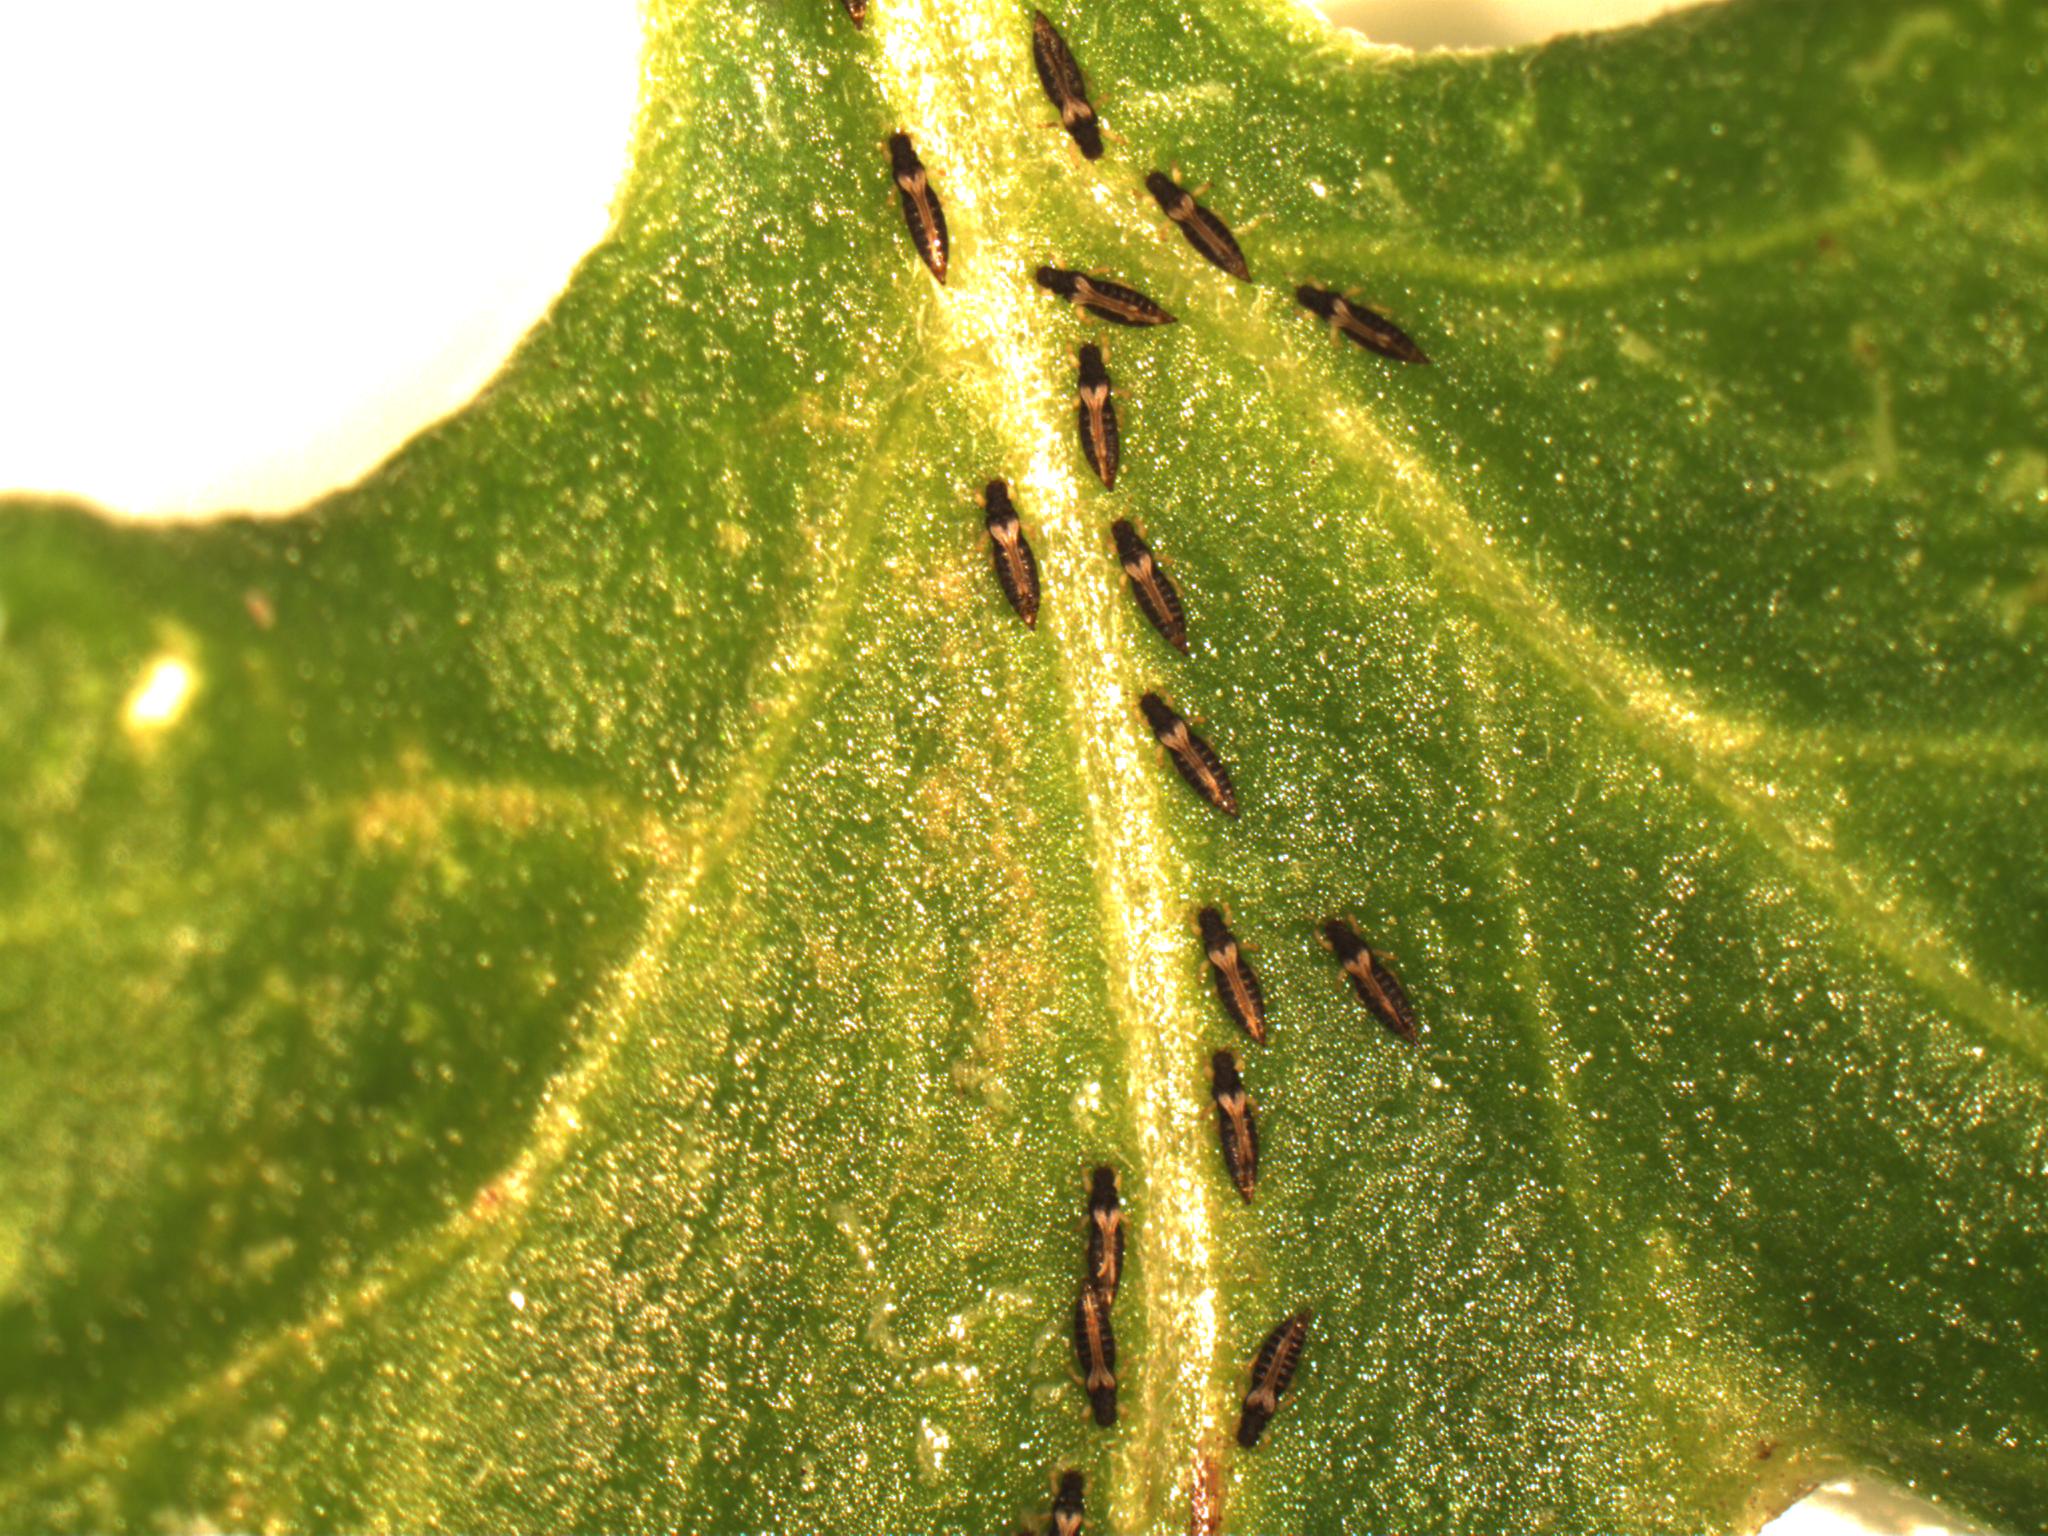 Adults feeding on leaf